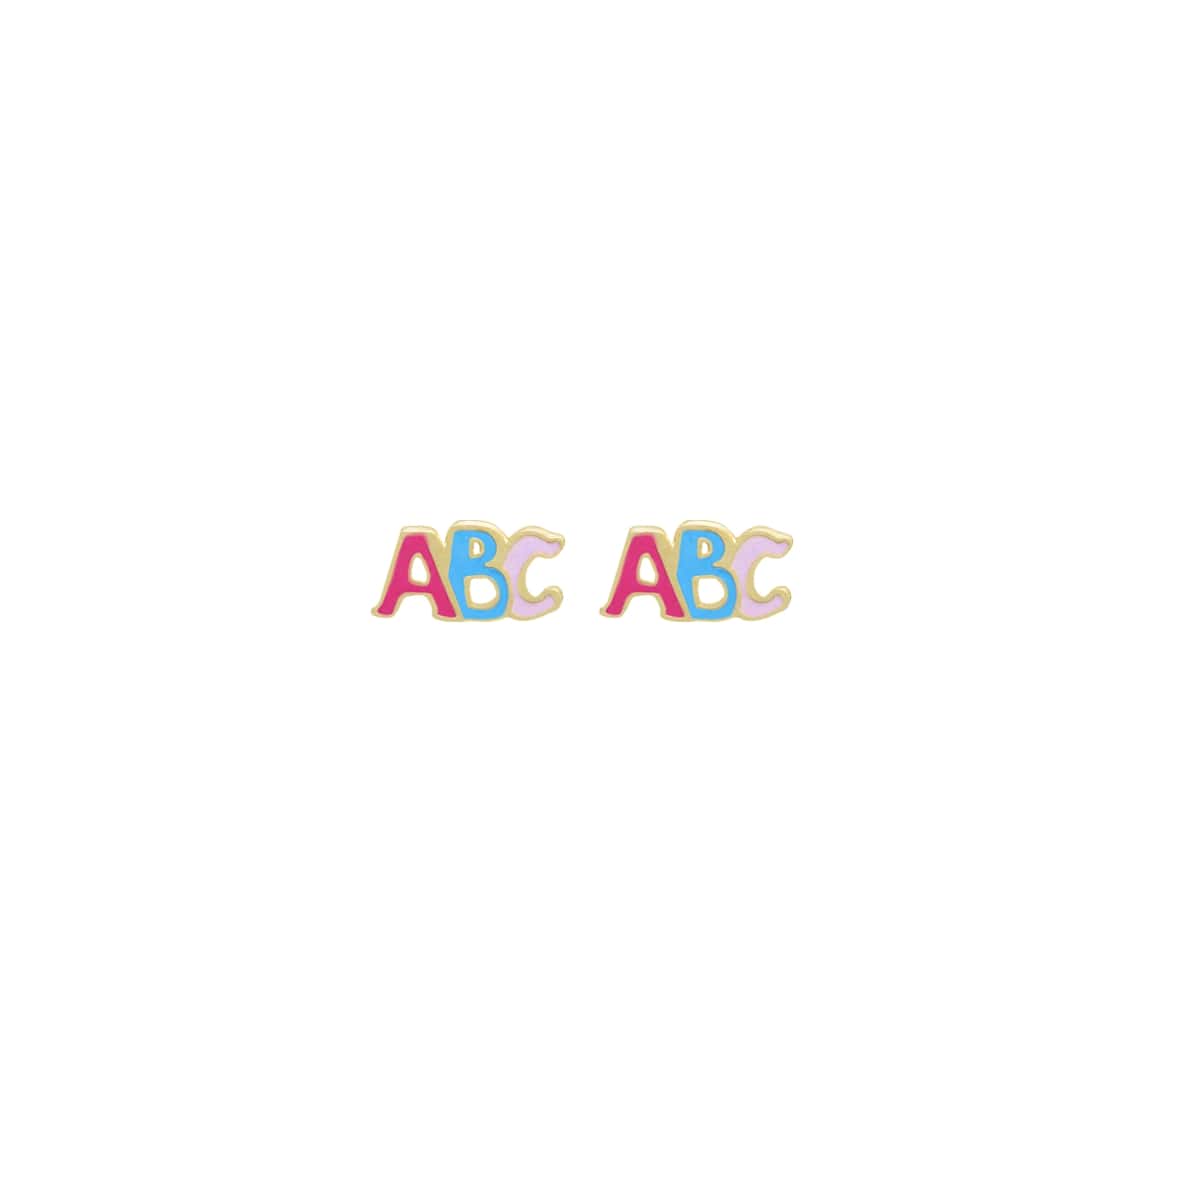 Brinco Infantil ABC Colorido Banhado em Ouro18k  - Lazzuli Joias